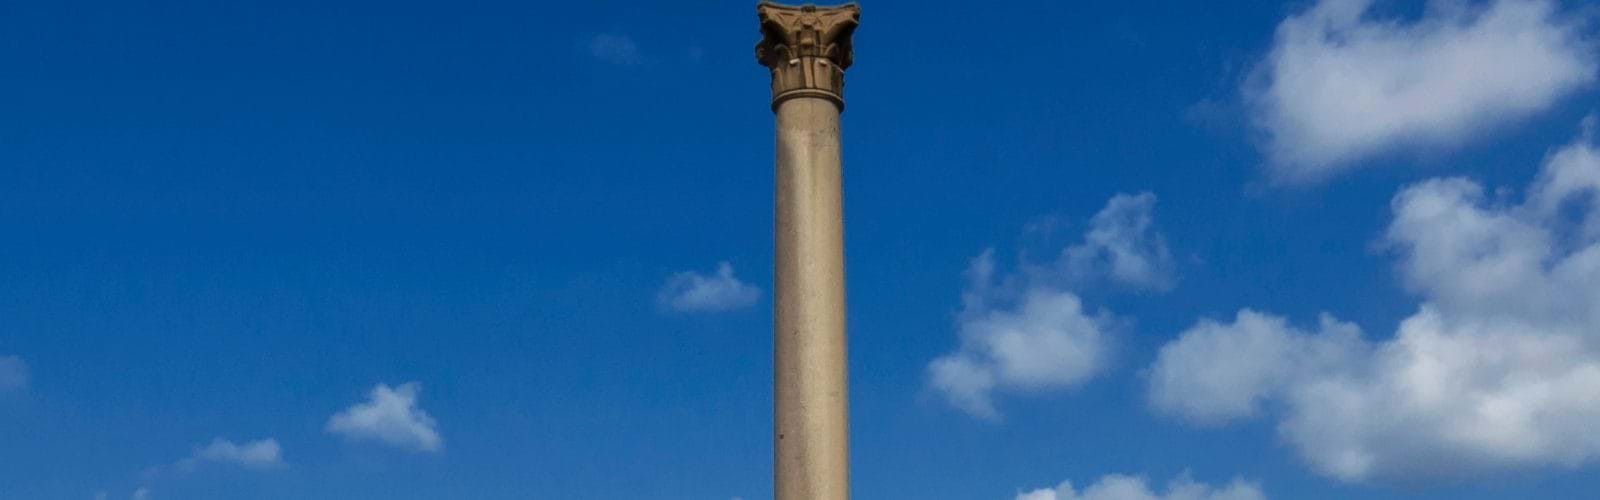 Pilar de Pompeu